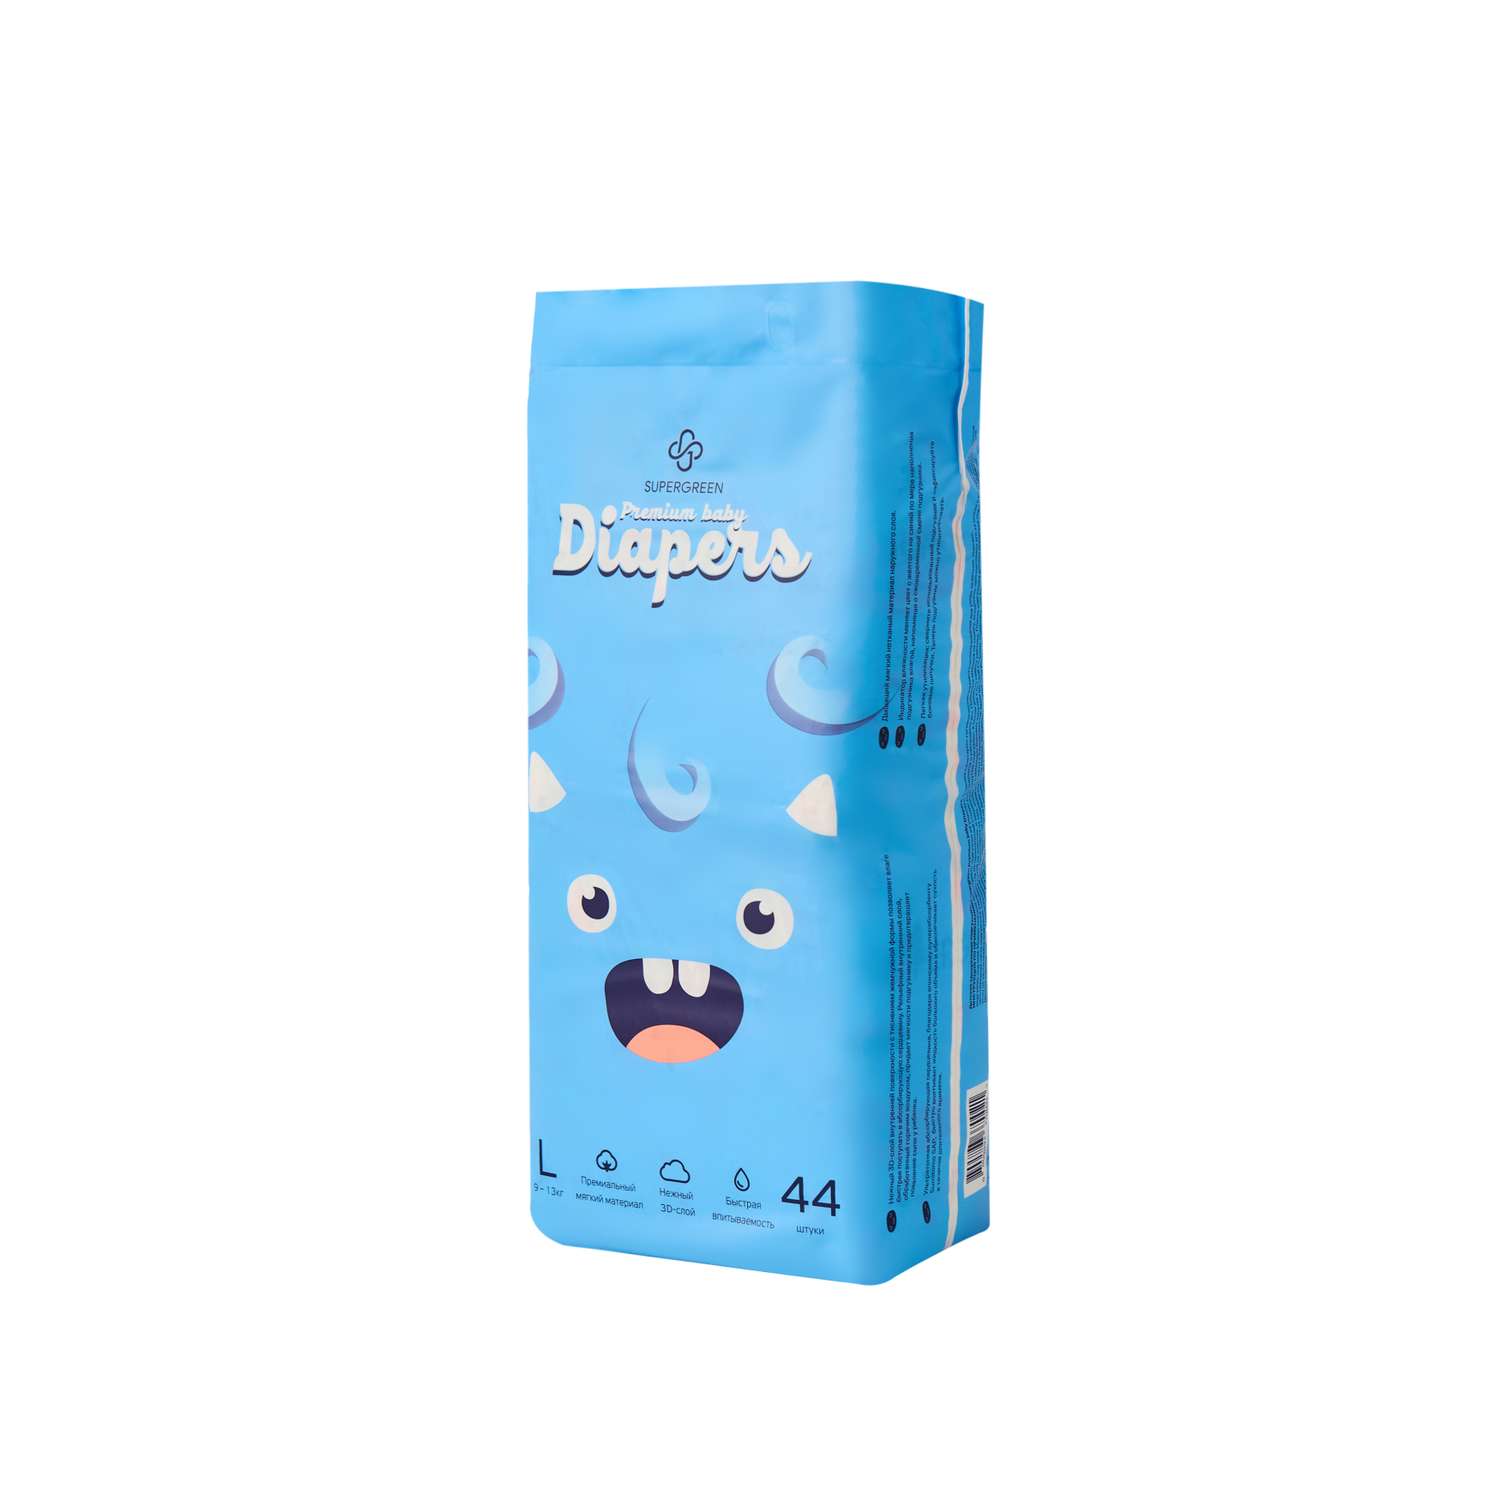 Подгузники SUPERGREEN Premium baby Diapers размер L 9 - 13 кг 44 шт - фото 6